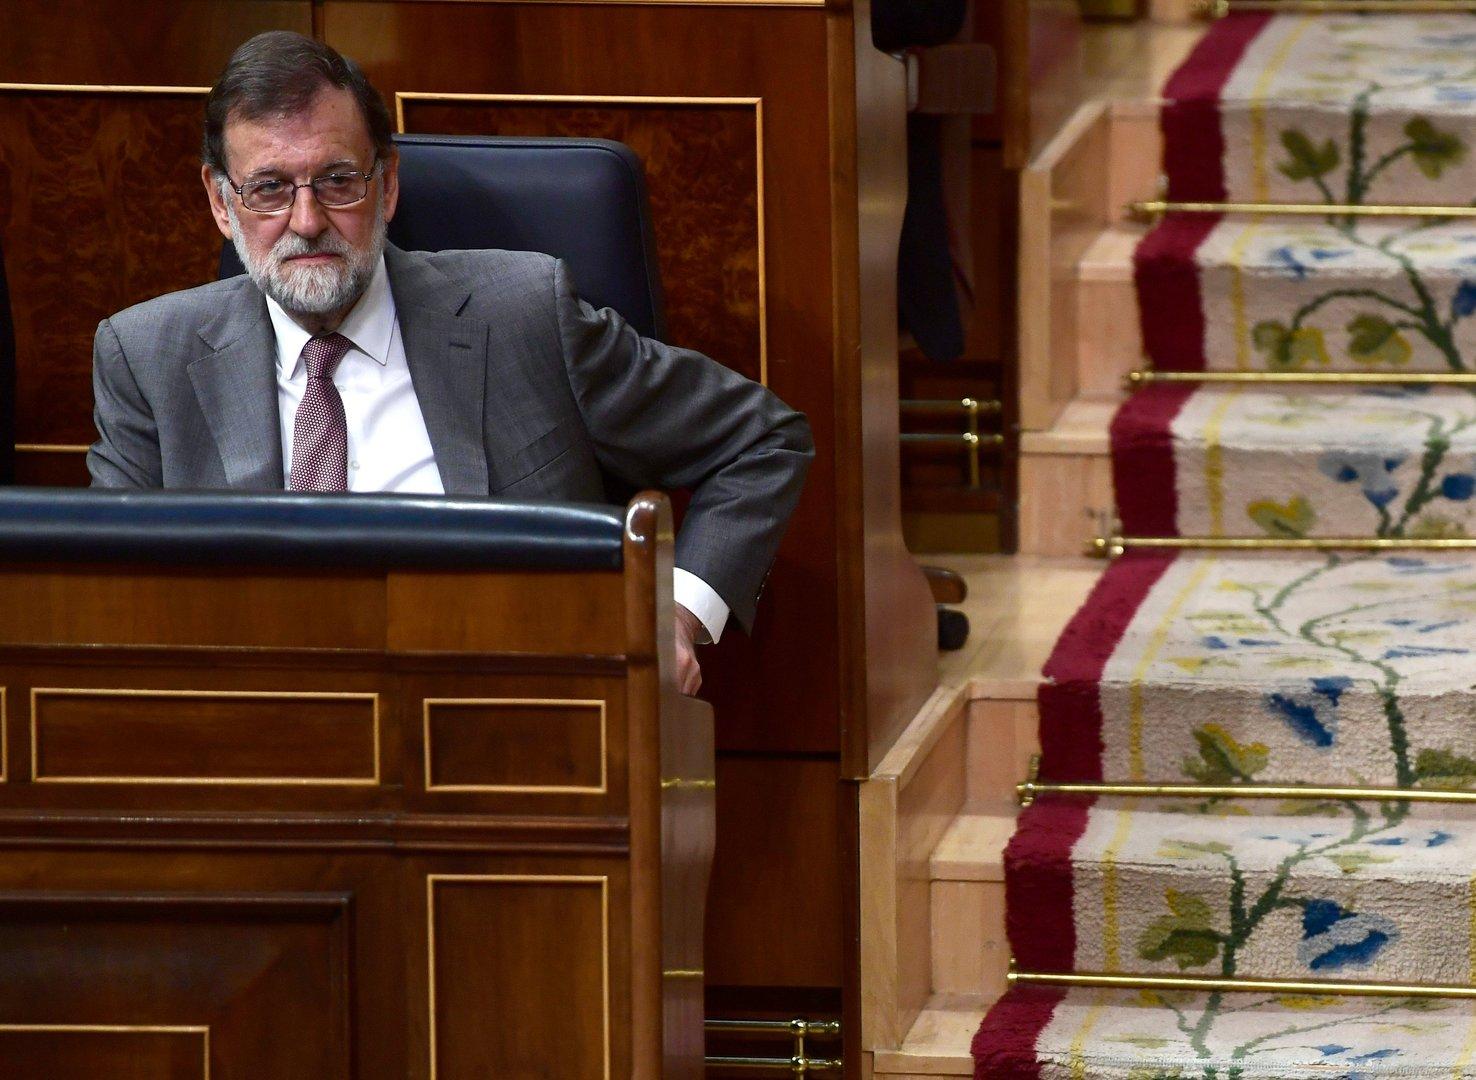 Baskenpartei stimmt gegen Rajoy: Abwahl scheint gewiss